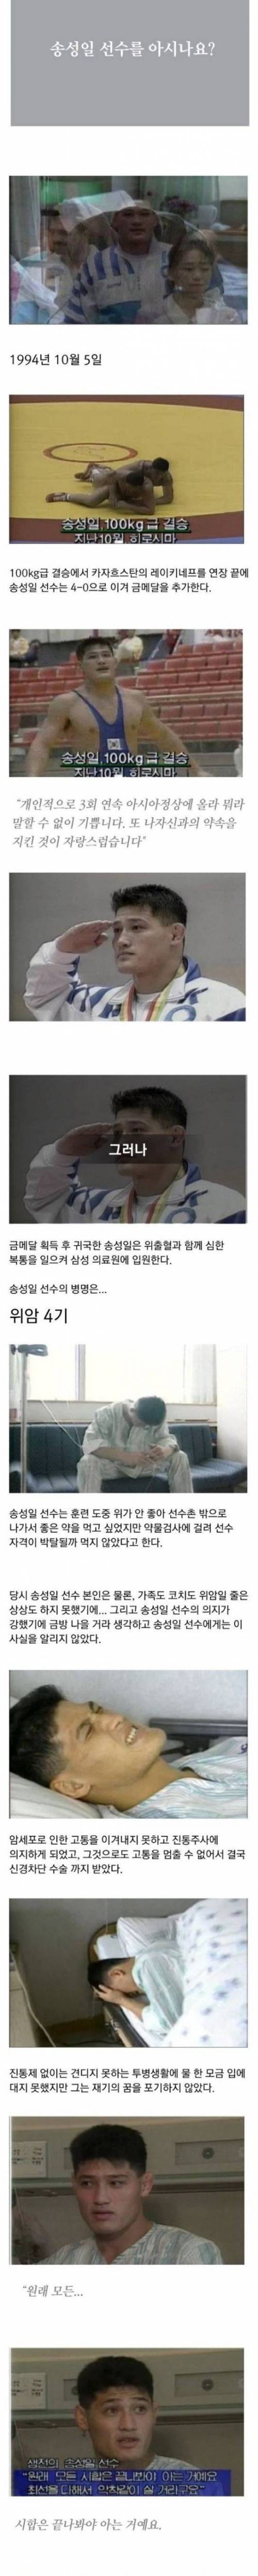 [스압] 24년전 위암 말기 상태로 금메달 따냈던 한국선수